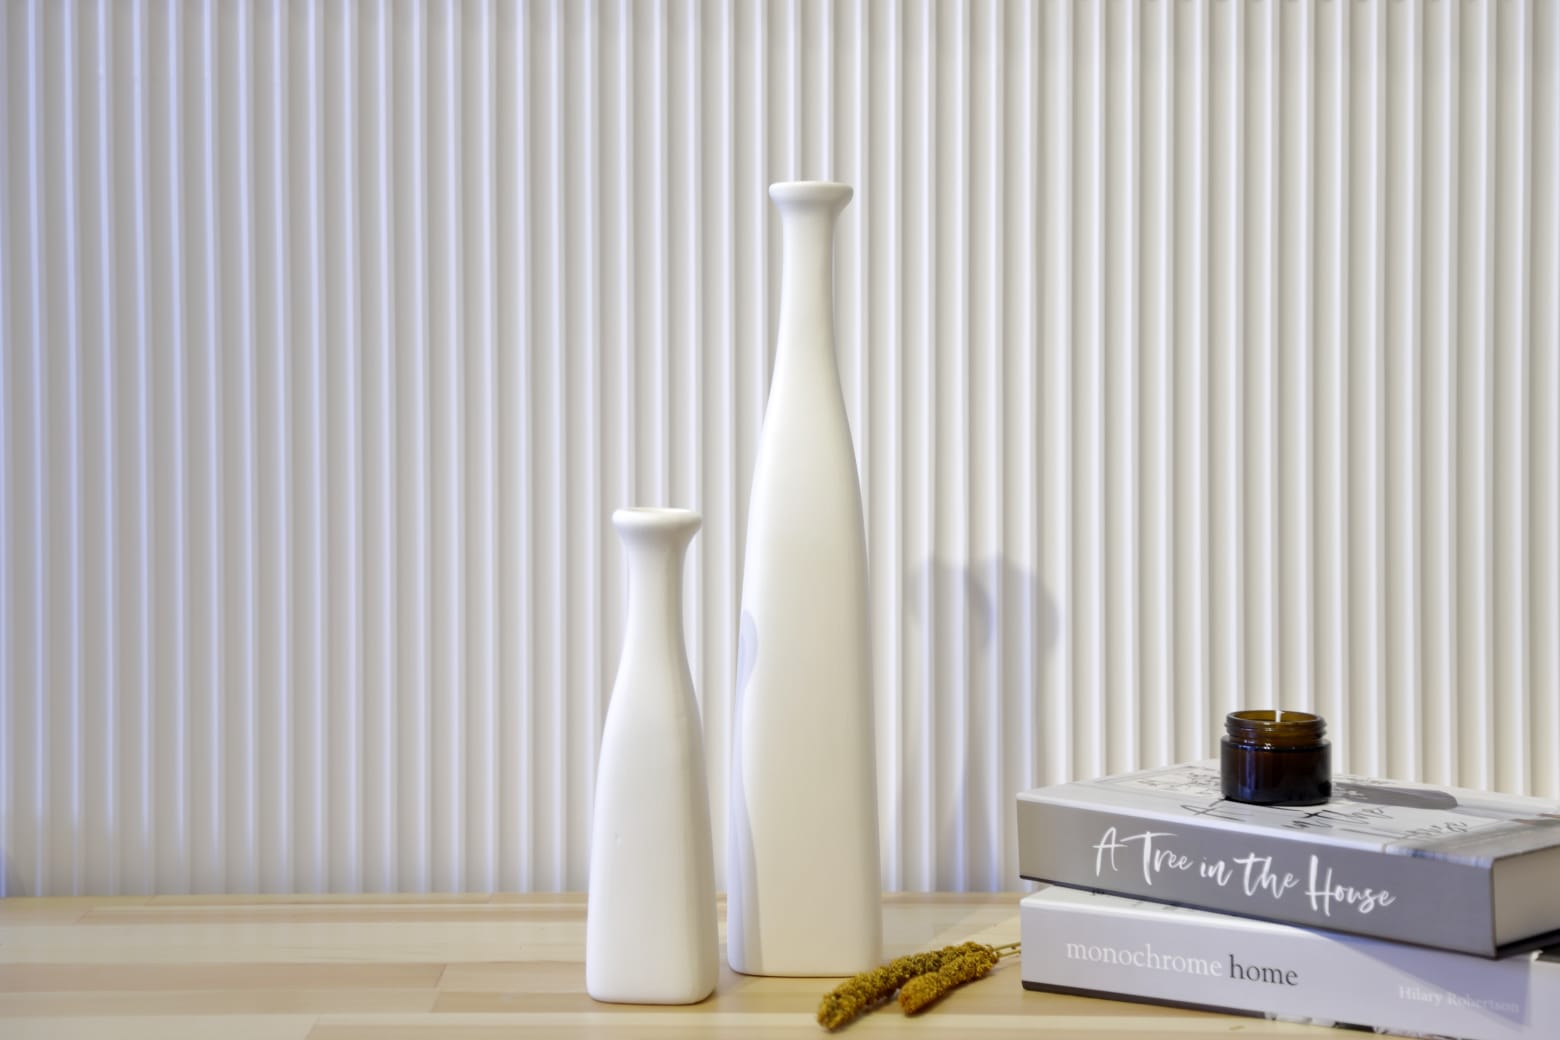 Persei 2 Pcs Ceramic Vase Set White